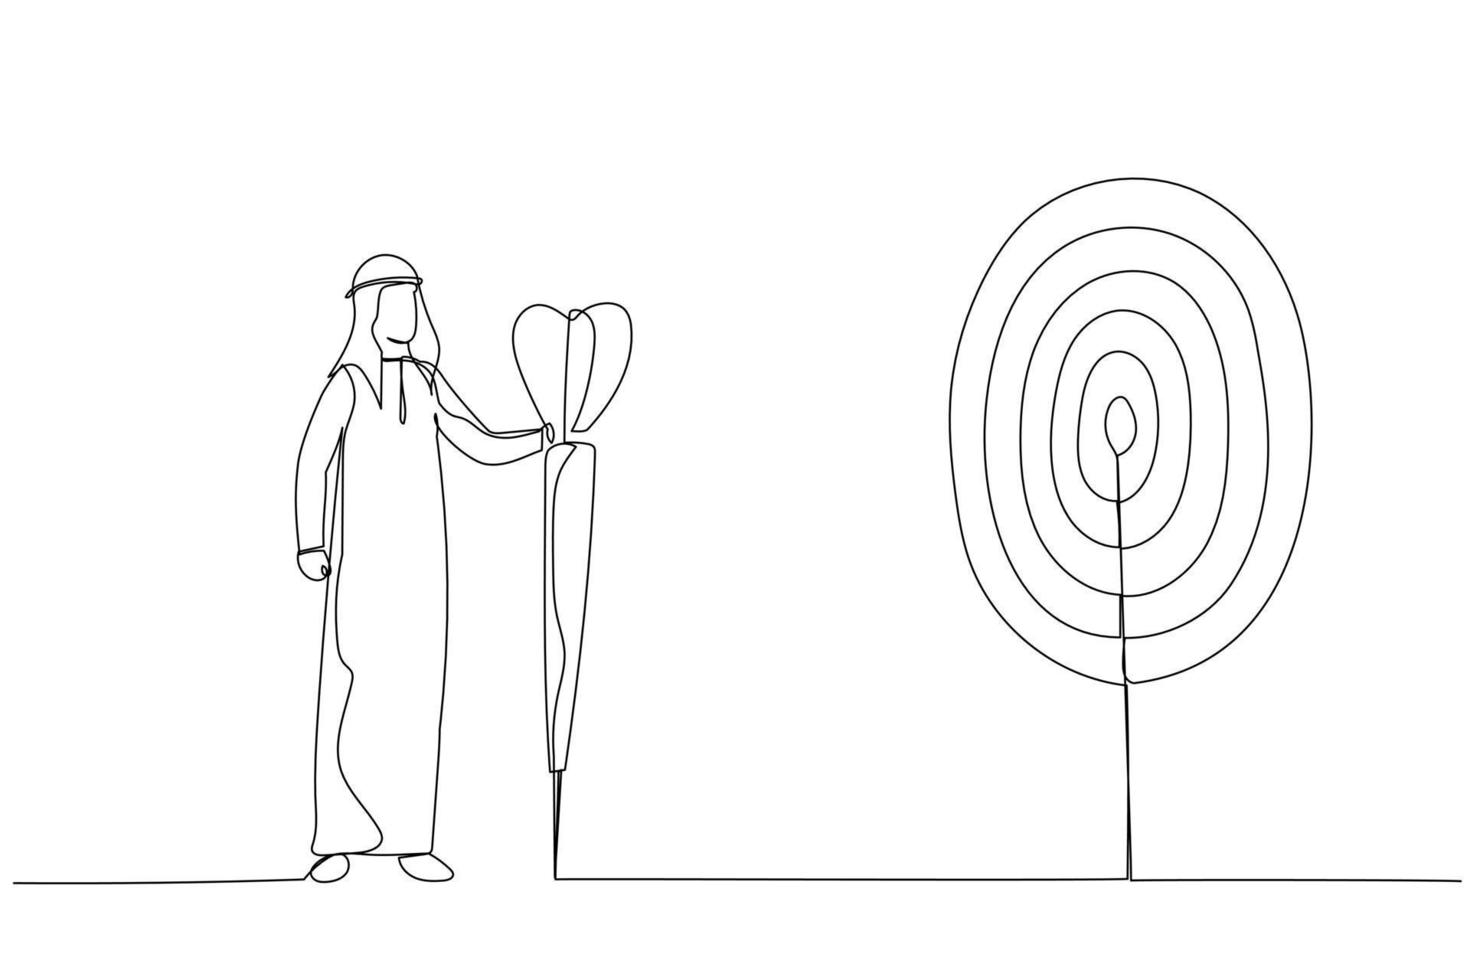 karikatur eines zielstrebigen arabischen geschäftsmannes mit speer in der hand betrachtet das ziel. Metapher für das Erreichen des Ziels. Kunst im Stil einer Linie vektor